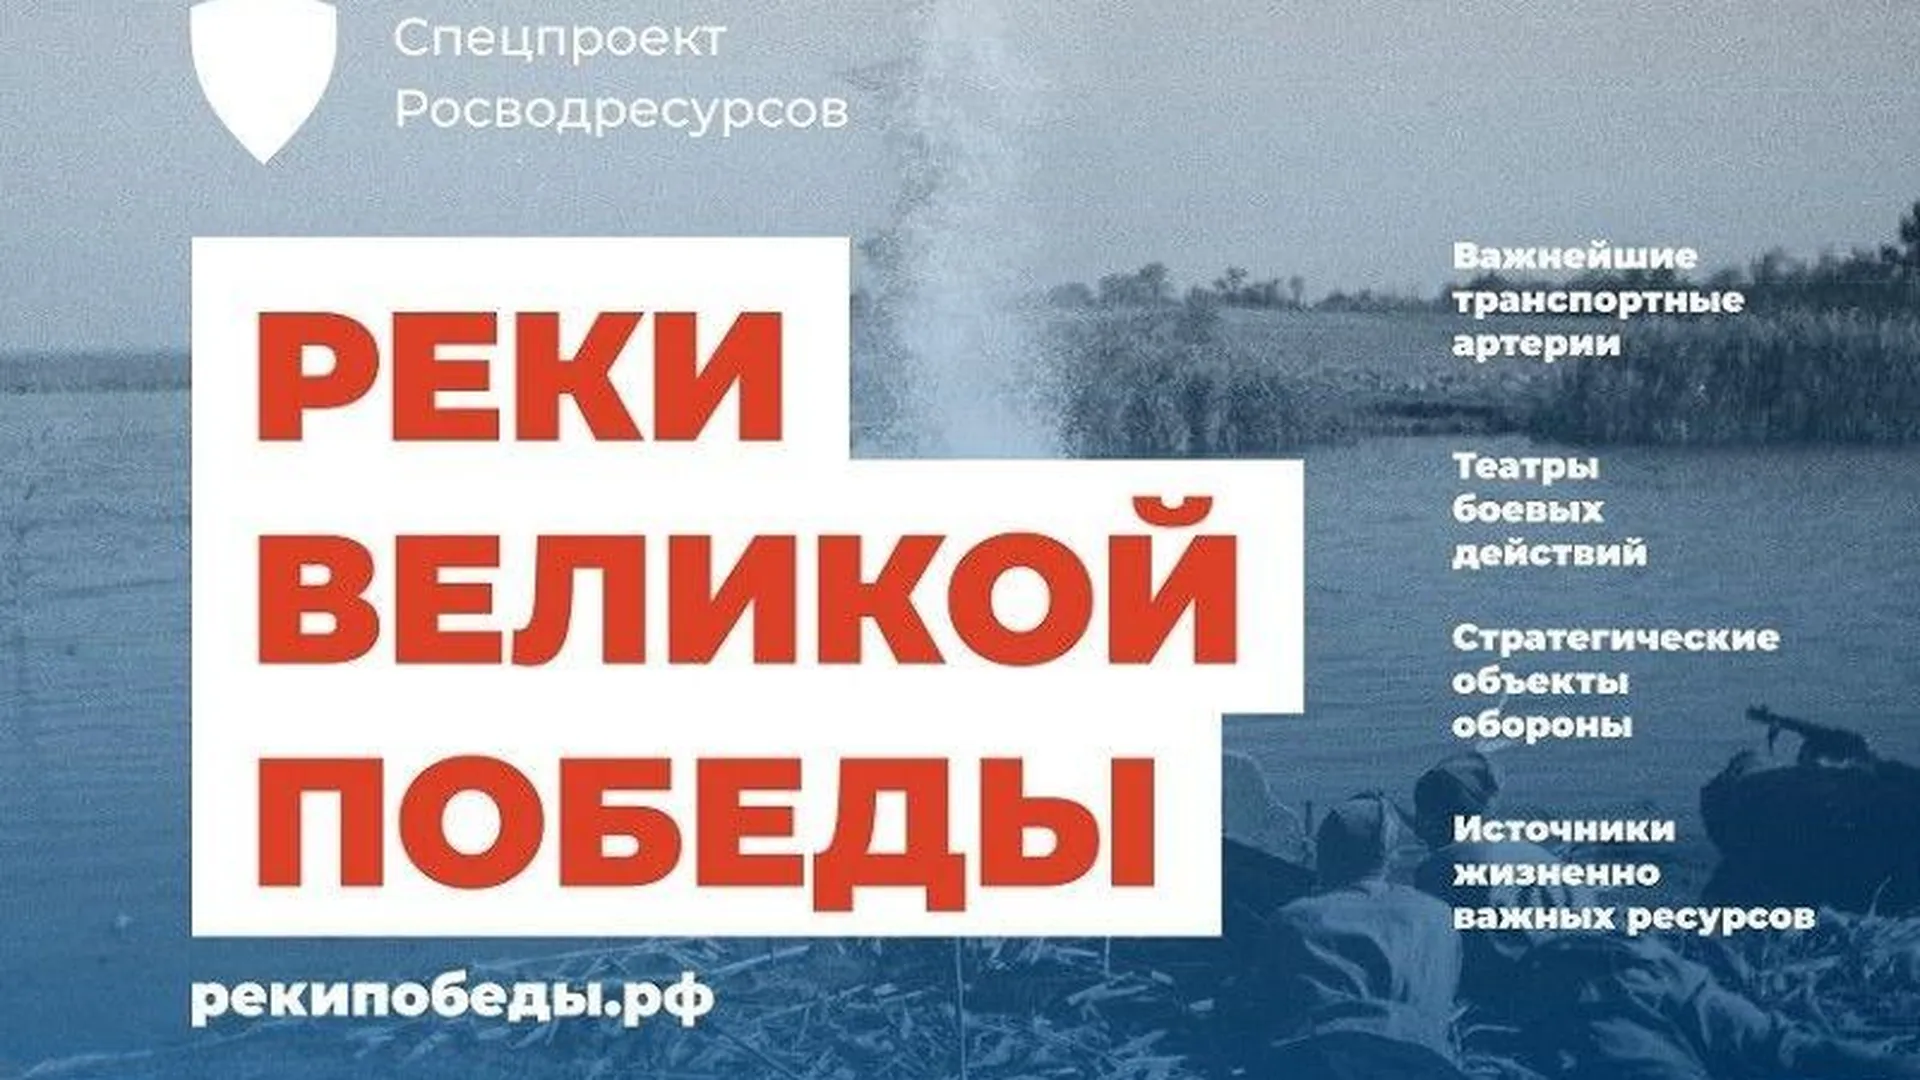 Пресс-служба Министерства экологии и природопользования Московской области